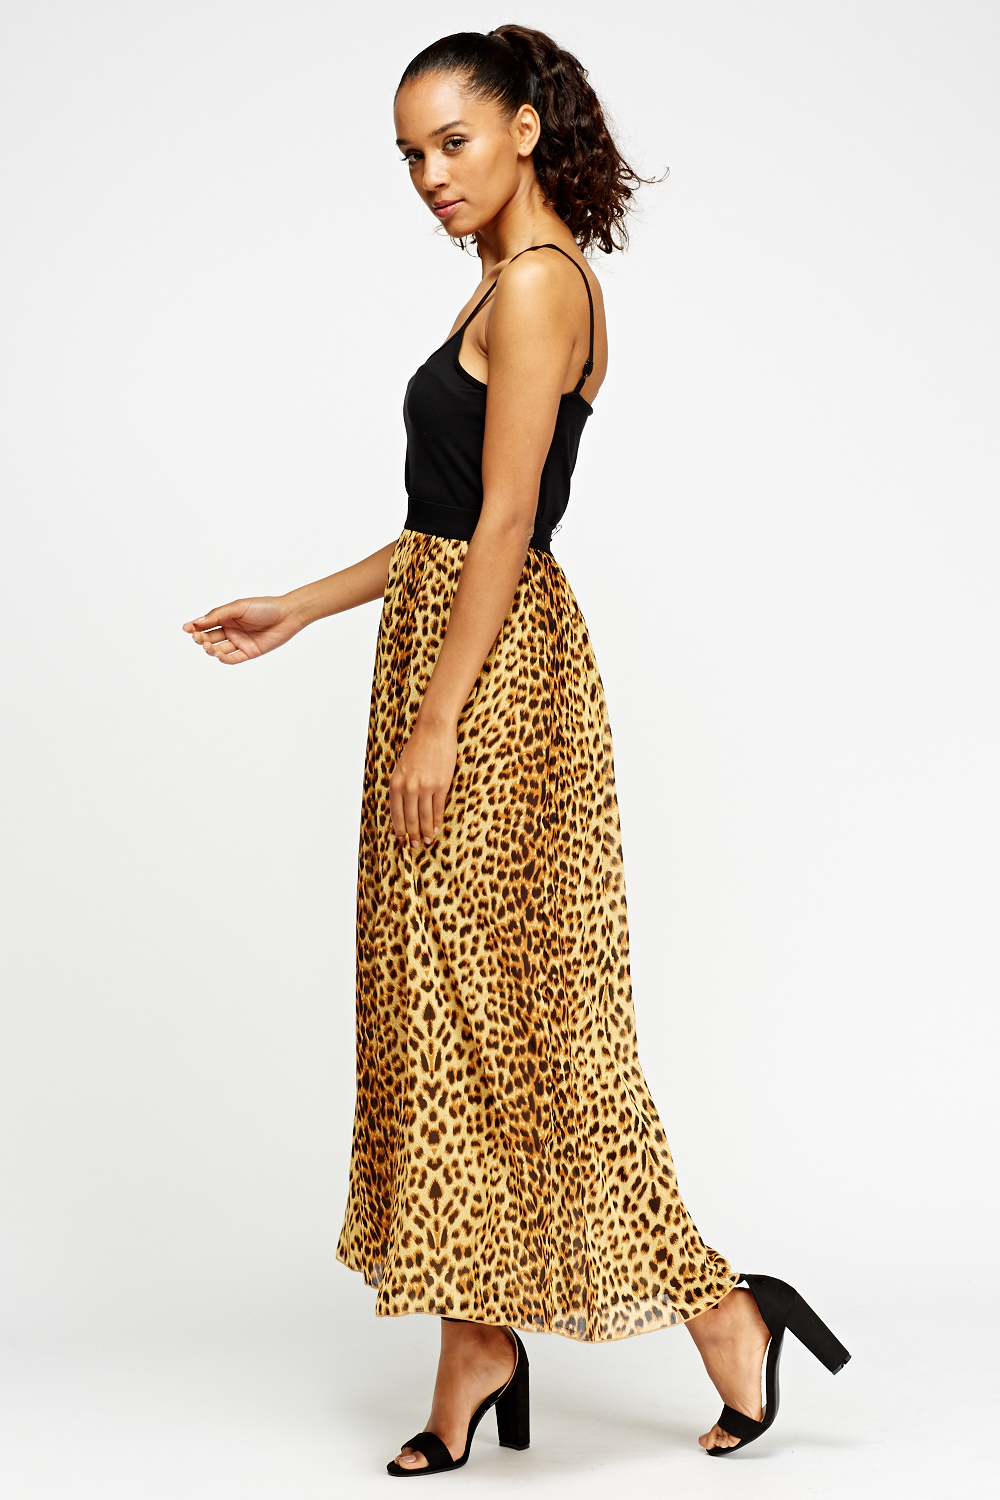 Leopard Print Maxi Skirt - Just $7